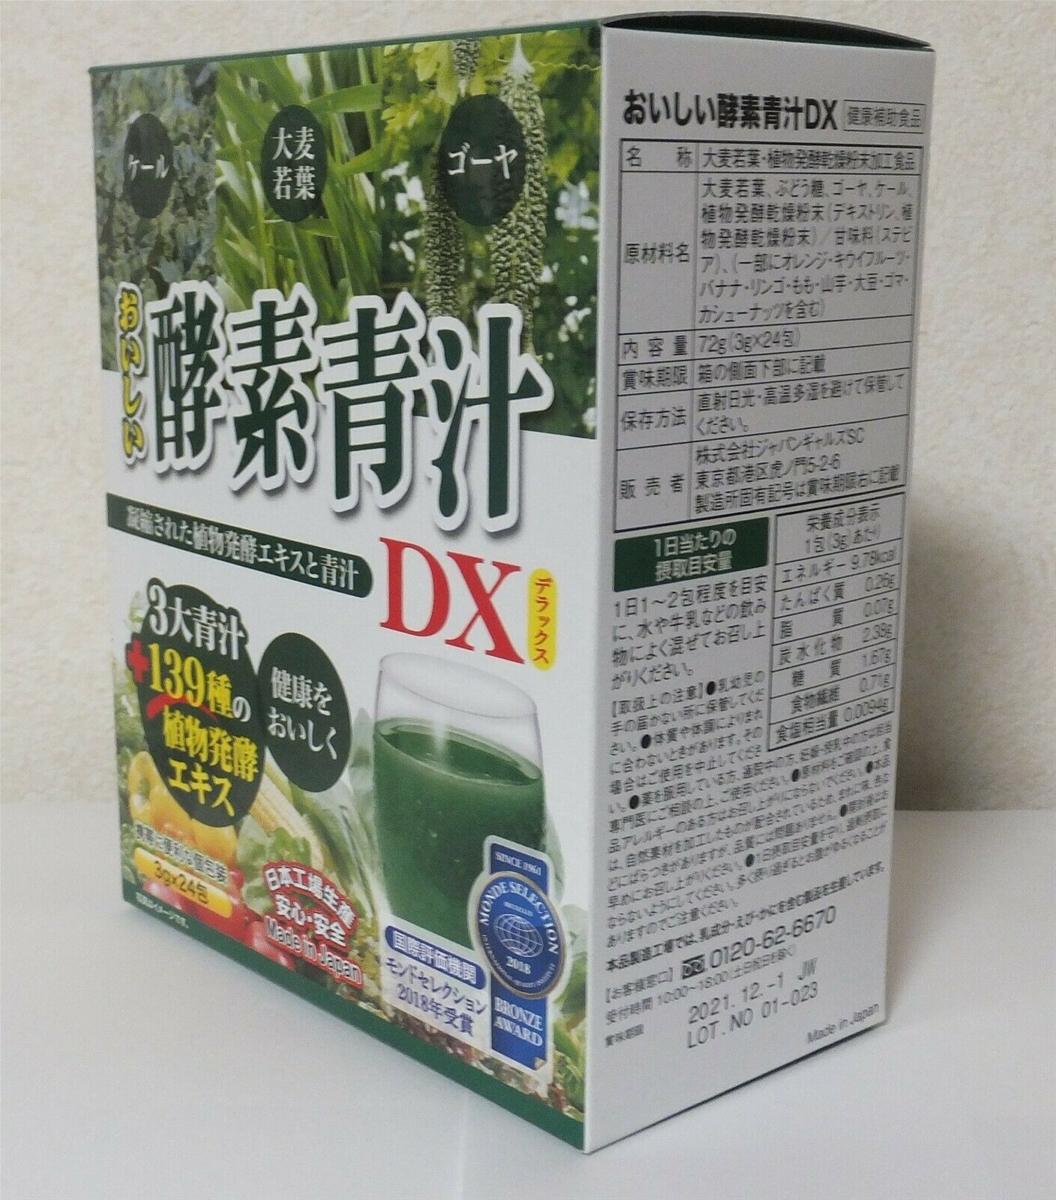 Hình ảnh Bột rau xanh tổng hợp thanh lọc cơ thể 24 gói (3g) pha sẵn Nội địa Nhật Bản - Tặng túi zip kẹo mật ong nguyên chất